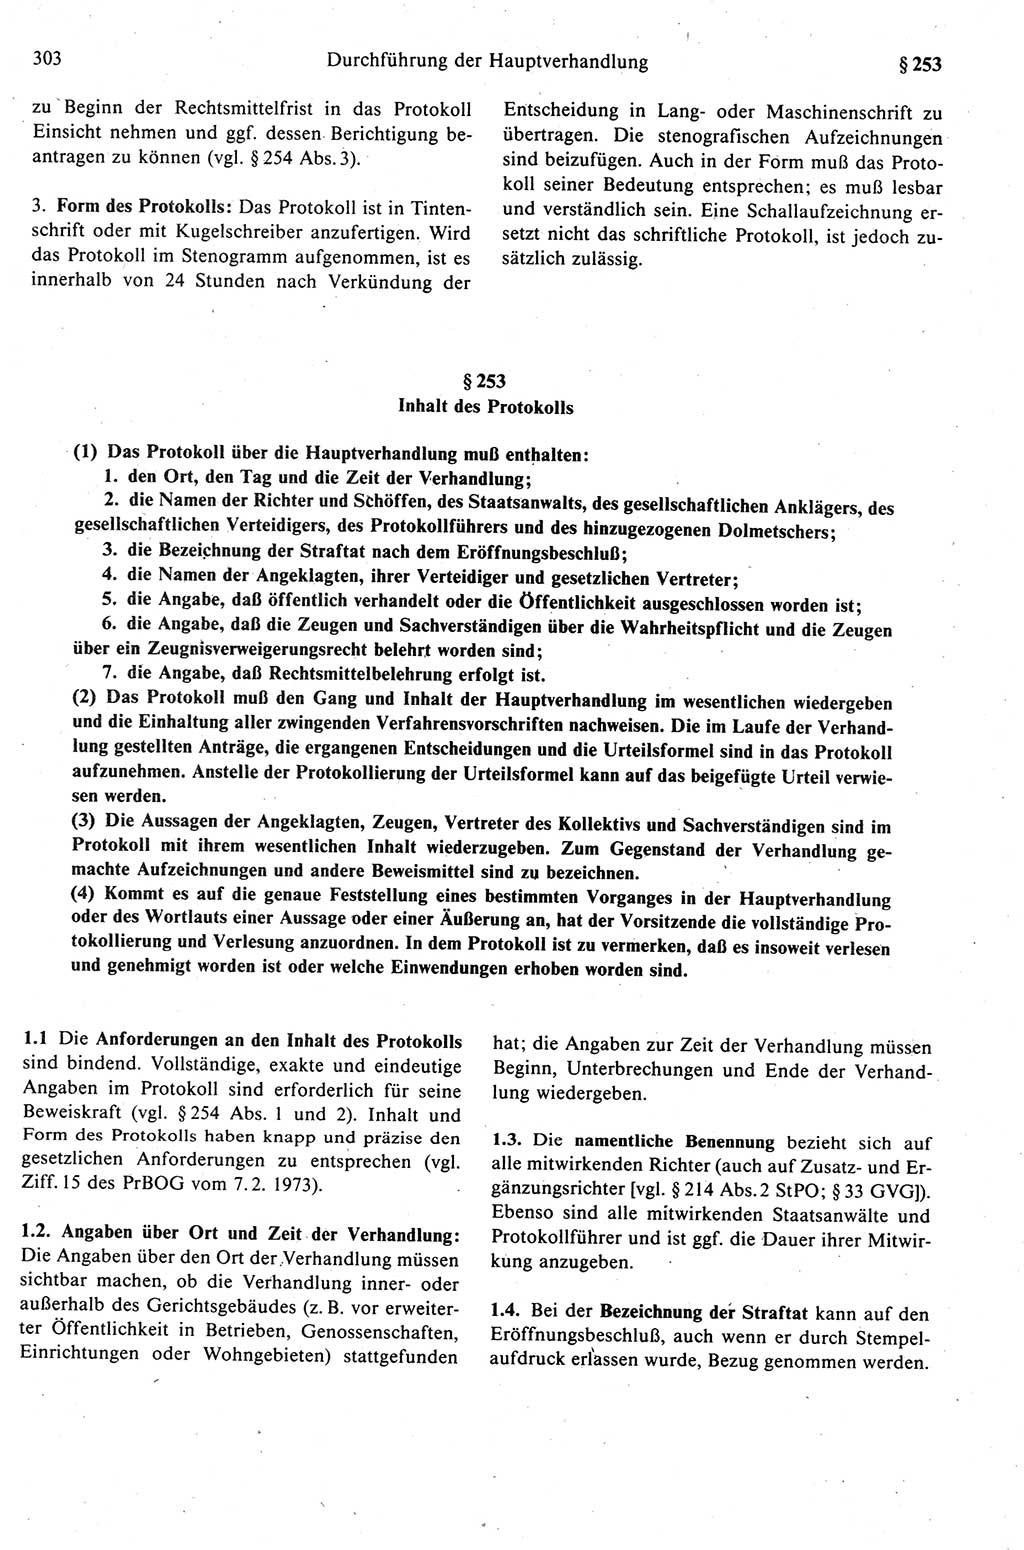 Strafprozeßrecht der DDR (Deutsche Demokratische Republik), Kommentar zur Strafprozeßordnung (StPO) 1989, Seite 303 (Strafprozeßr. DDR Komm. StPO 1989, S. 303)